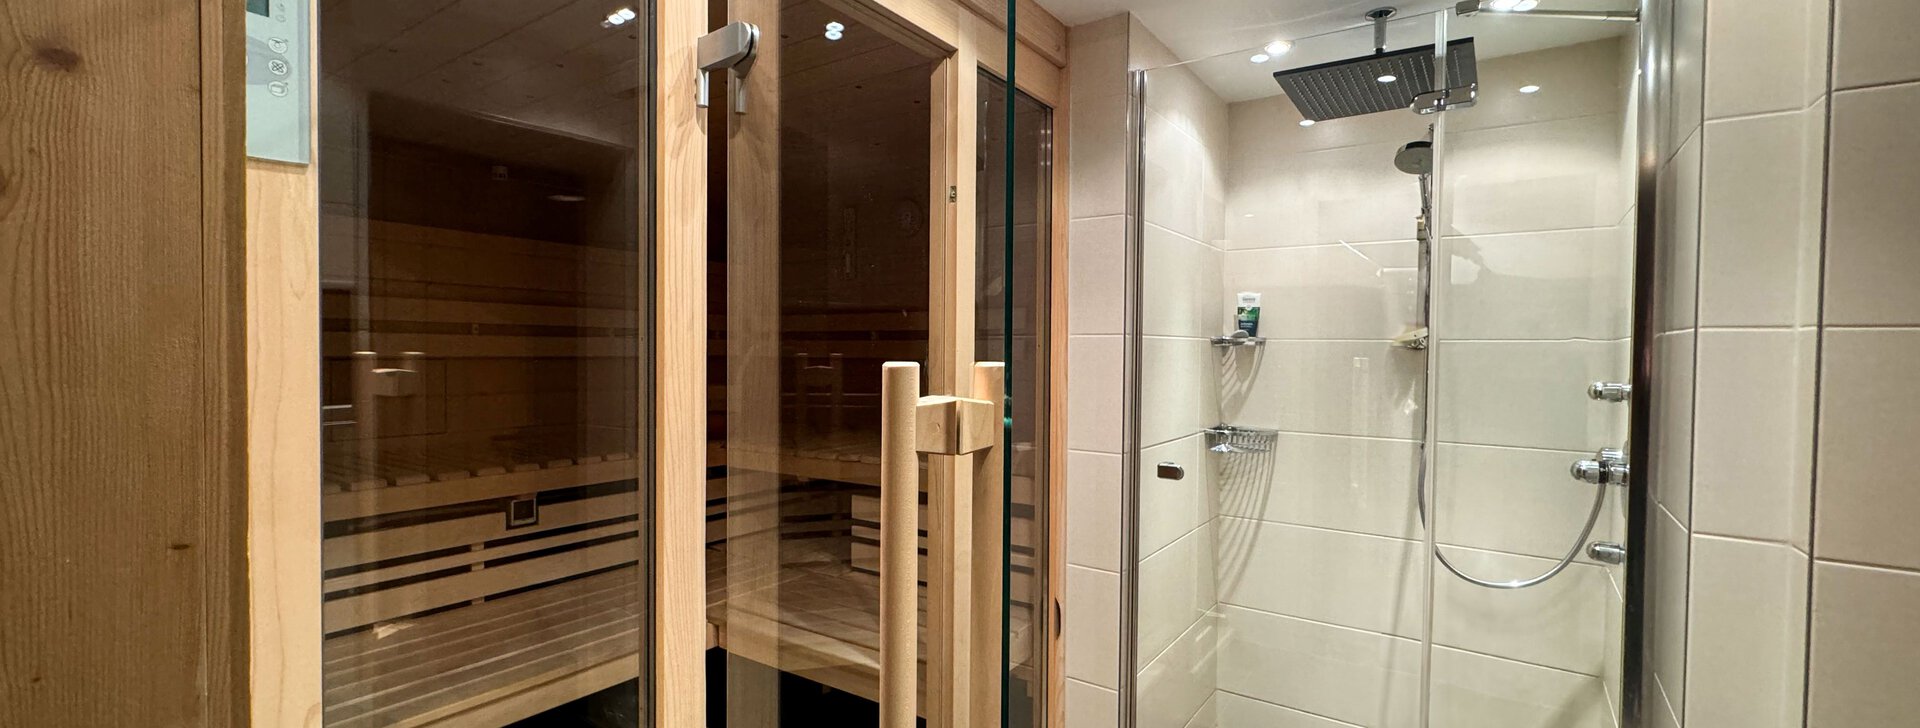 Sauna und Dusche, Einfamilienhaus mit Einliegerwohnung, Immobilie kaufen, Traunstein | © HausBauHaus GmbH 